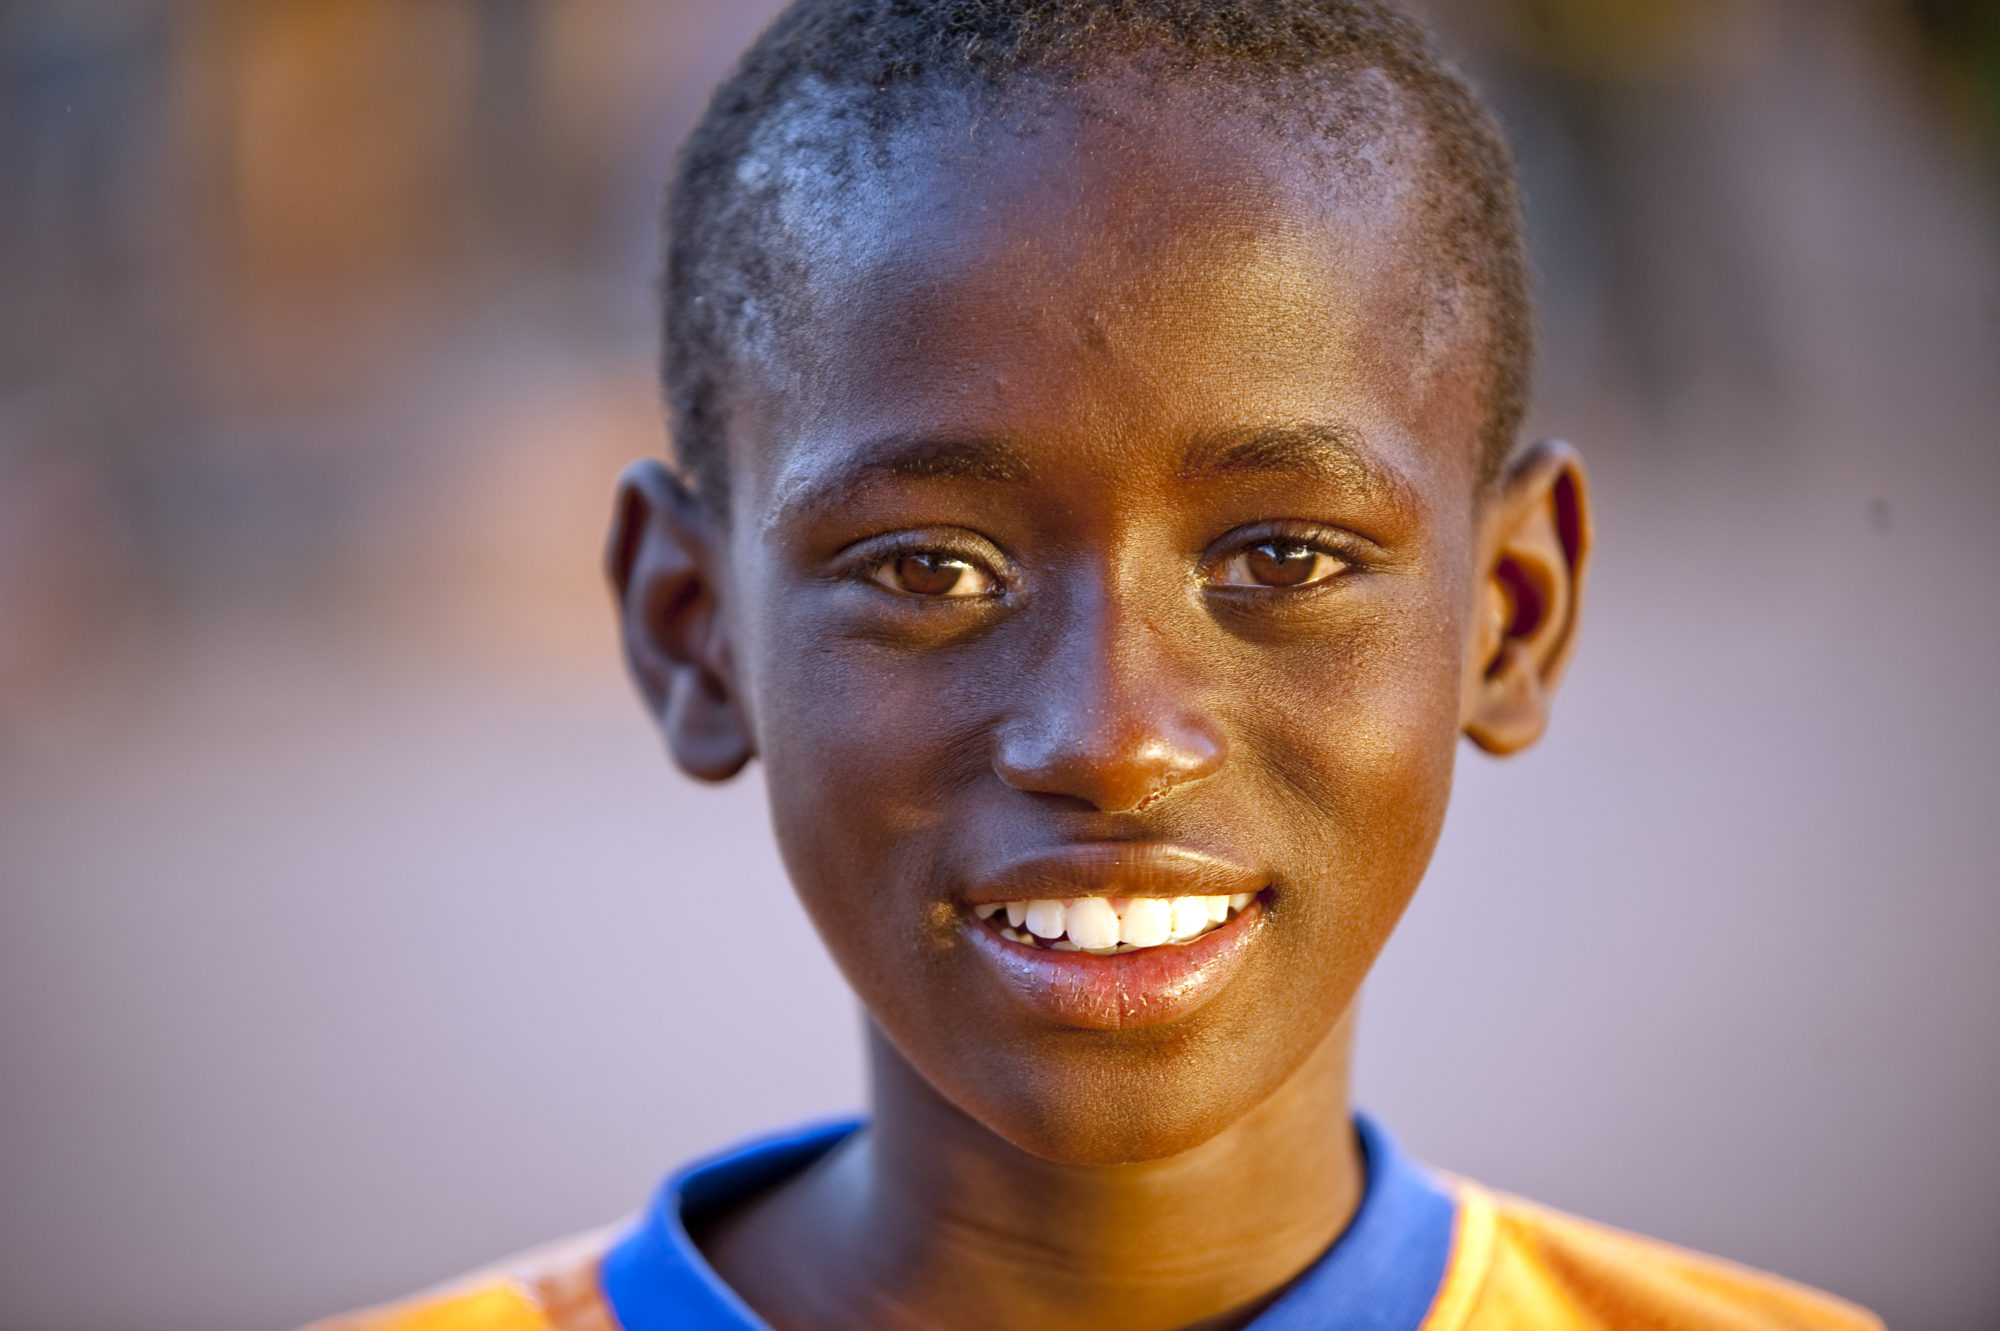 Foto di Un bambino maliano